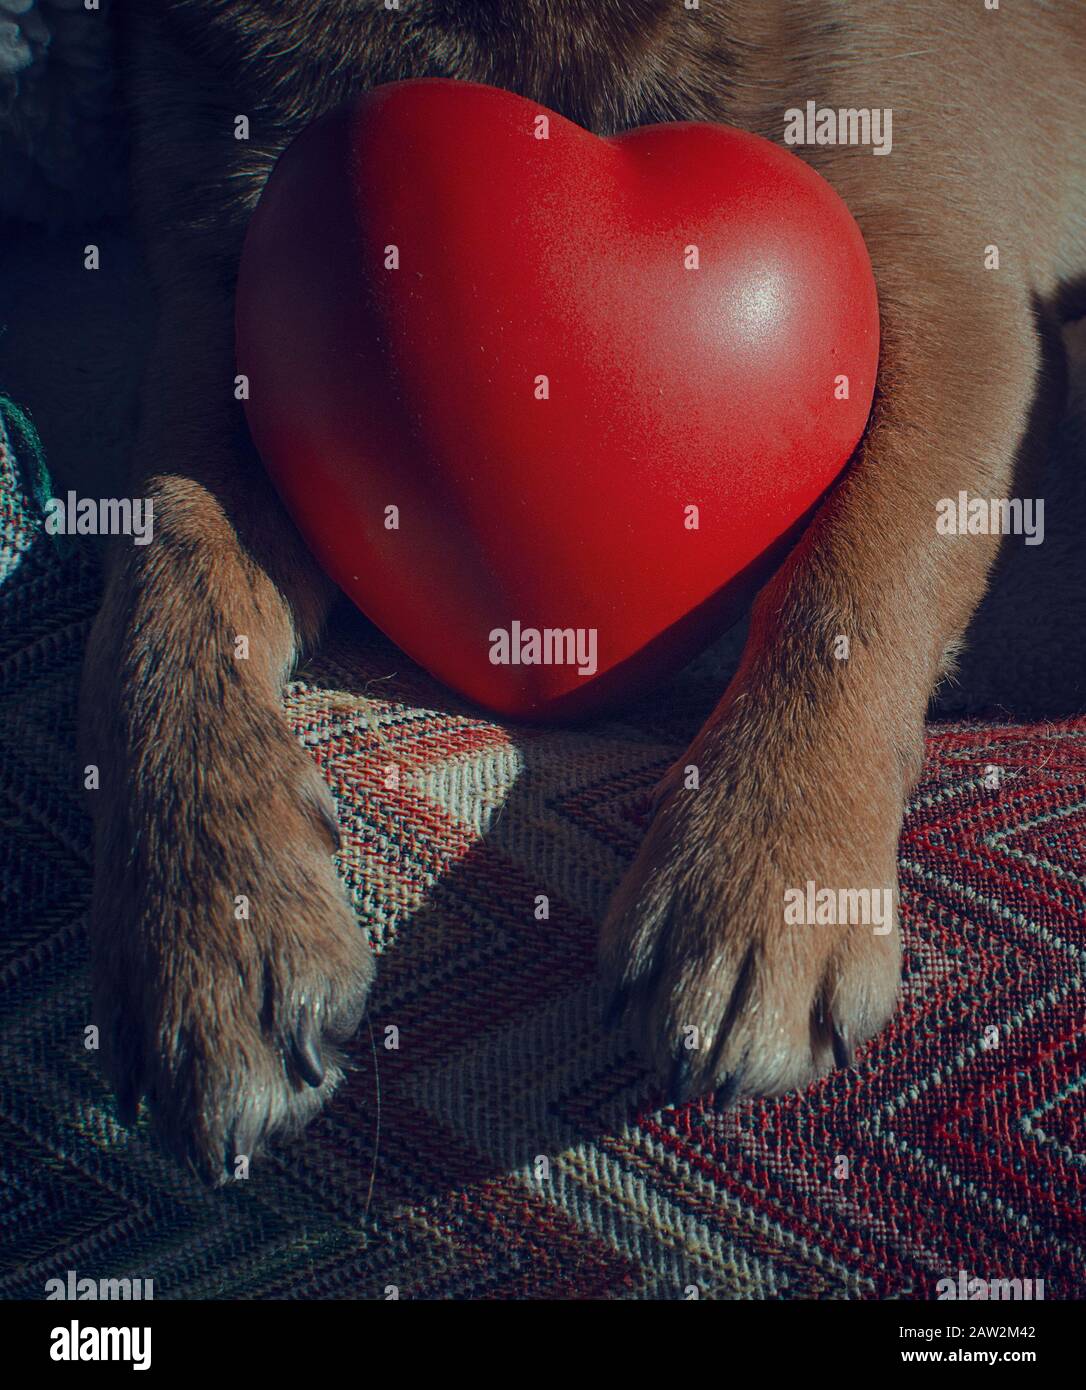 Día De San Valentín Doggy. Primer plano de las patas de un chihuahua sosteniendo un juguete en forma de corazón. Foto de stock